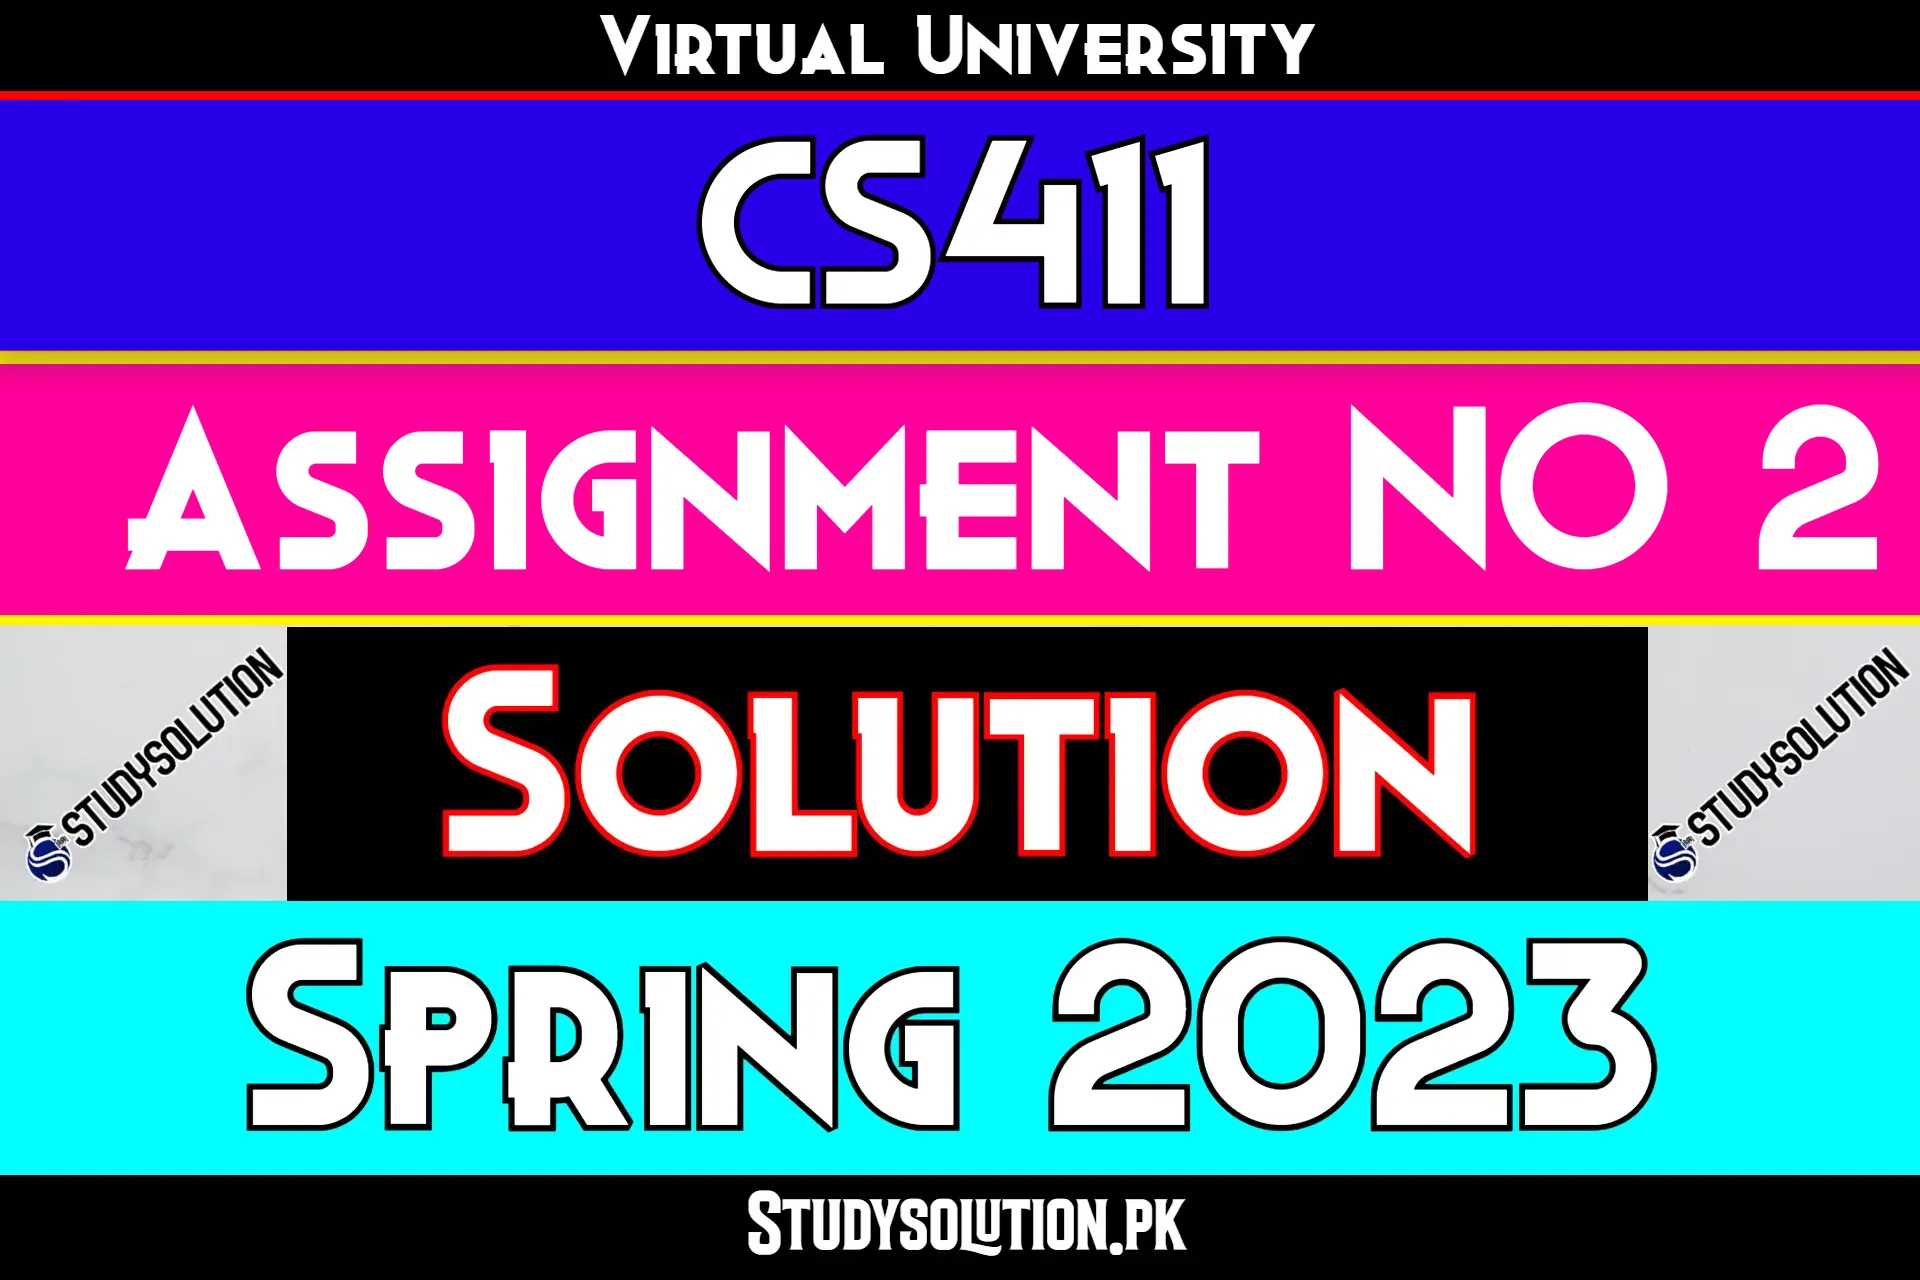 CS411 Assignment No 2 Solution Spring 2023